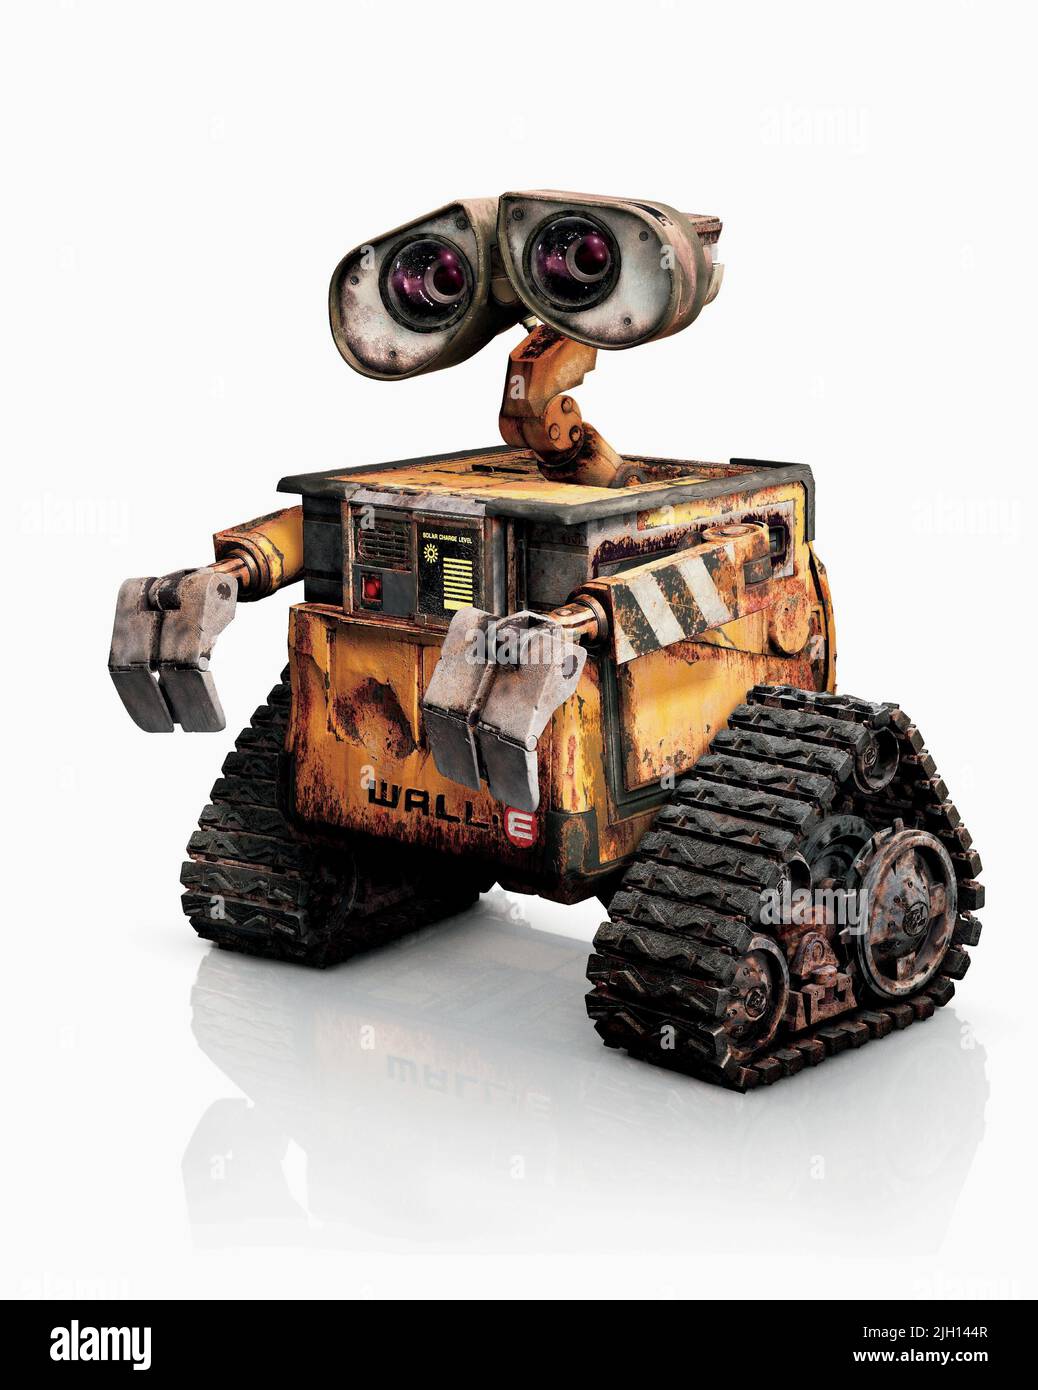 Hình ảnh Wall-E robot chất lượng cao và các bức ảnh liên quan có sẵn trên Alamy, giúp bạn thỏa mãn nhu cầu tìm kiếm hình ảnh chất lượng về robot Wall-E. Hãy xem ngay!